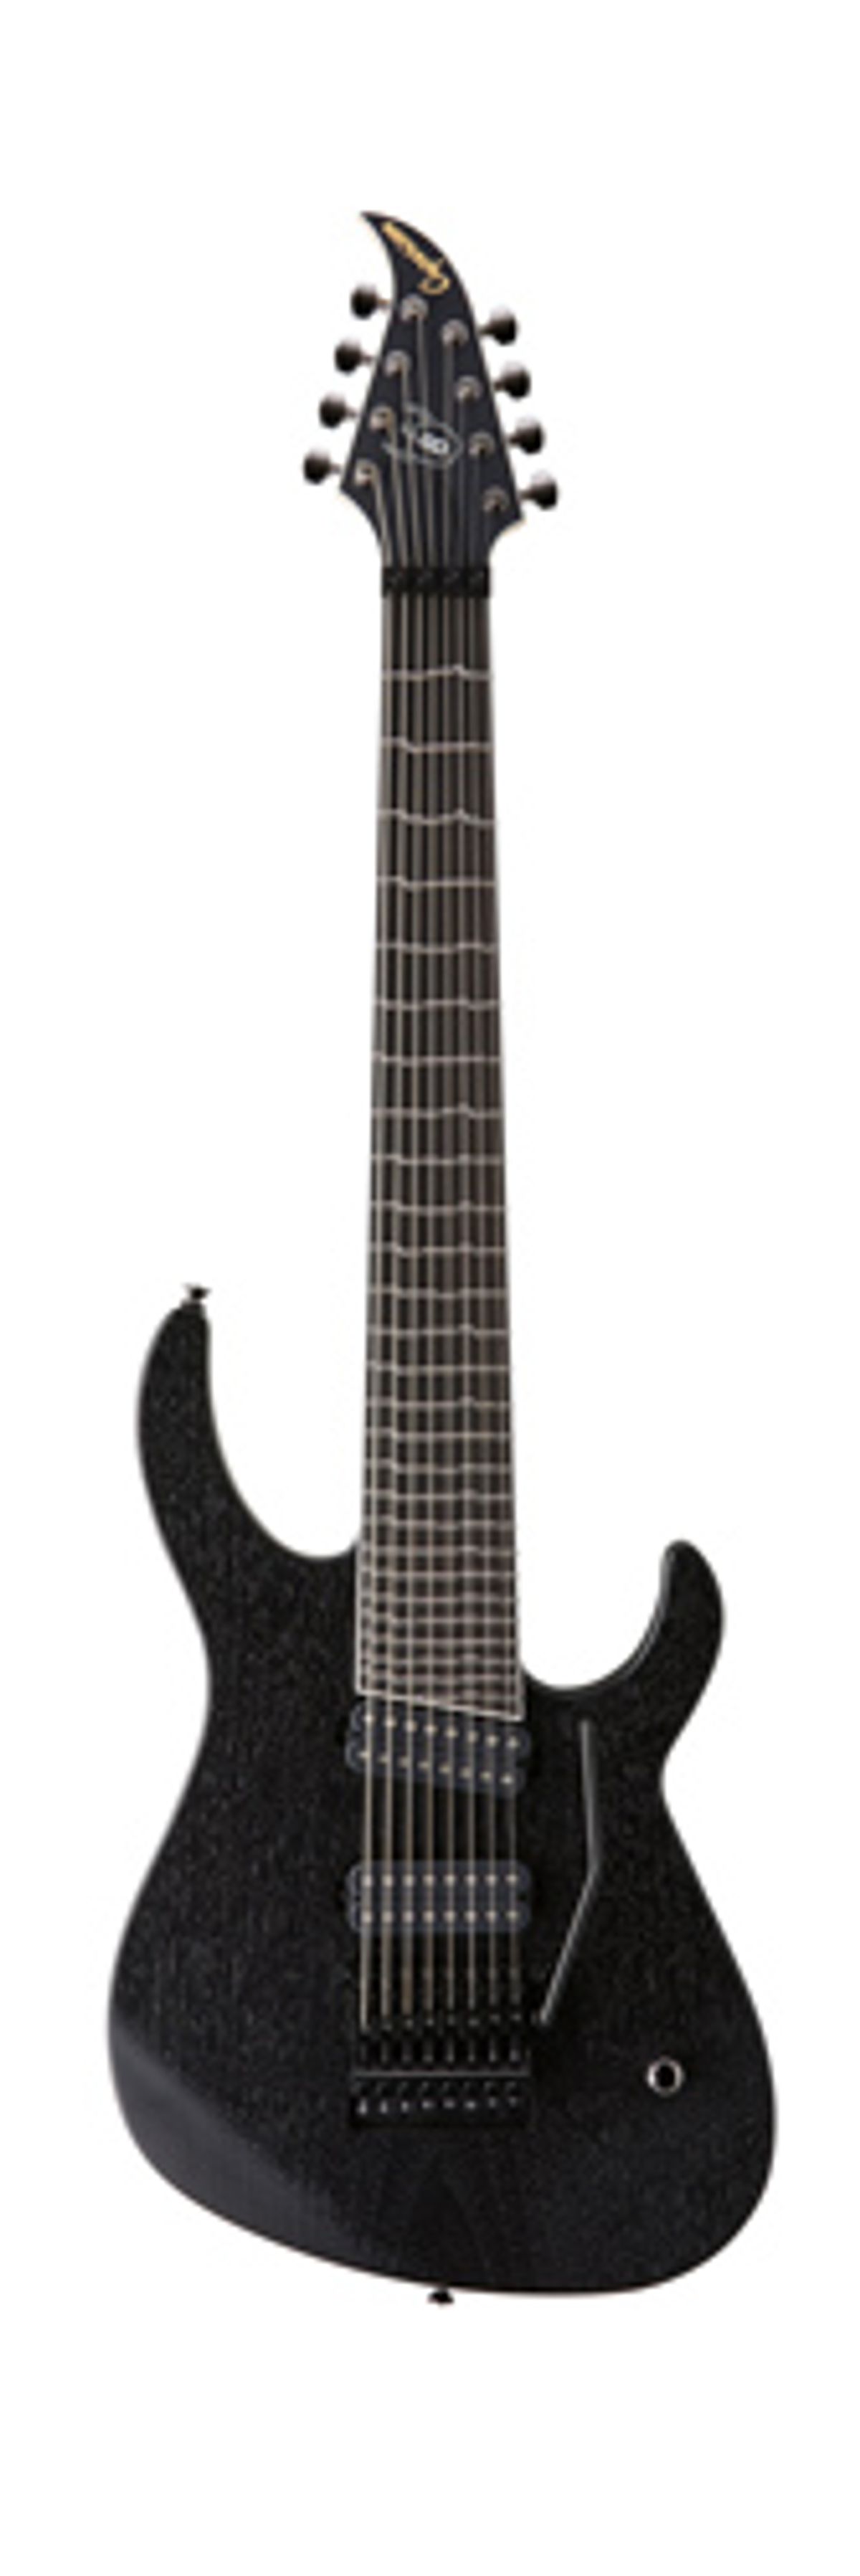 Caparison Guitars Announces the Mattias "IA" Eklundh Signature Model